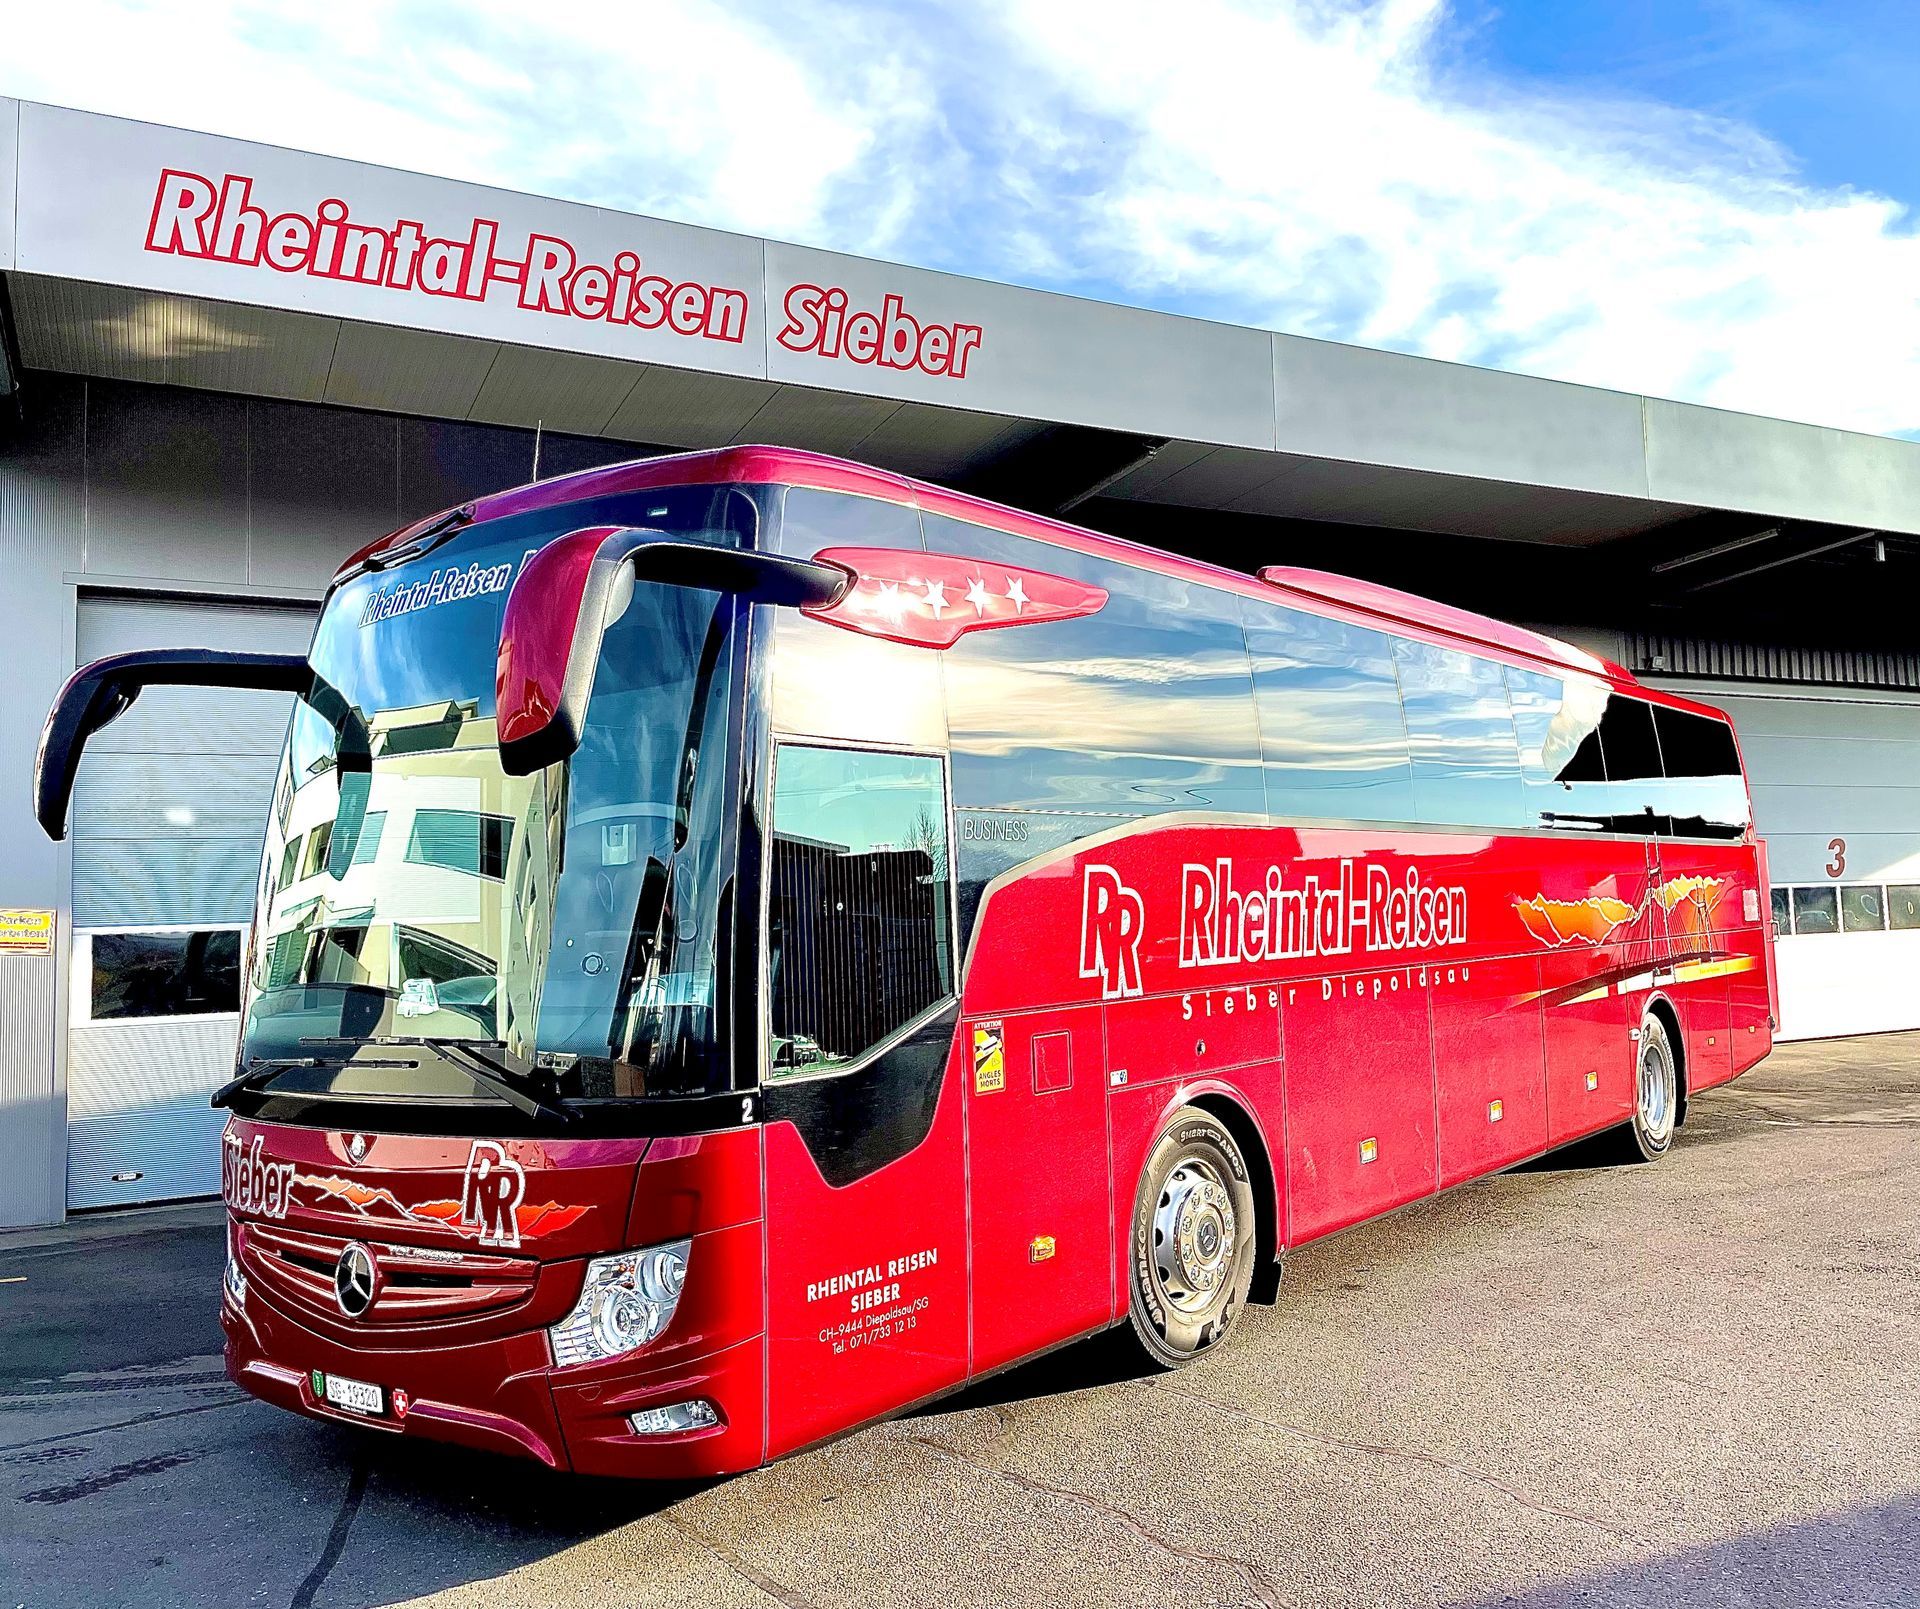 Rheintal-Reisen Sieber Diepoldsau Mercedes-Benz Tourismo 15 RHD